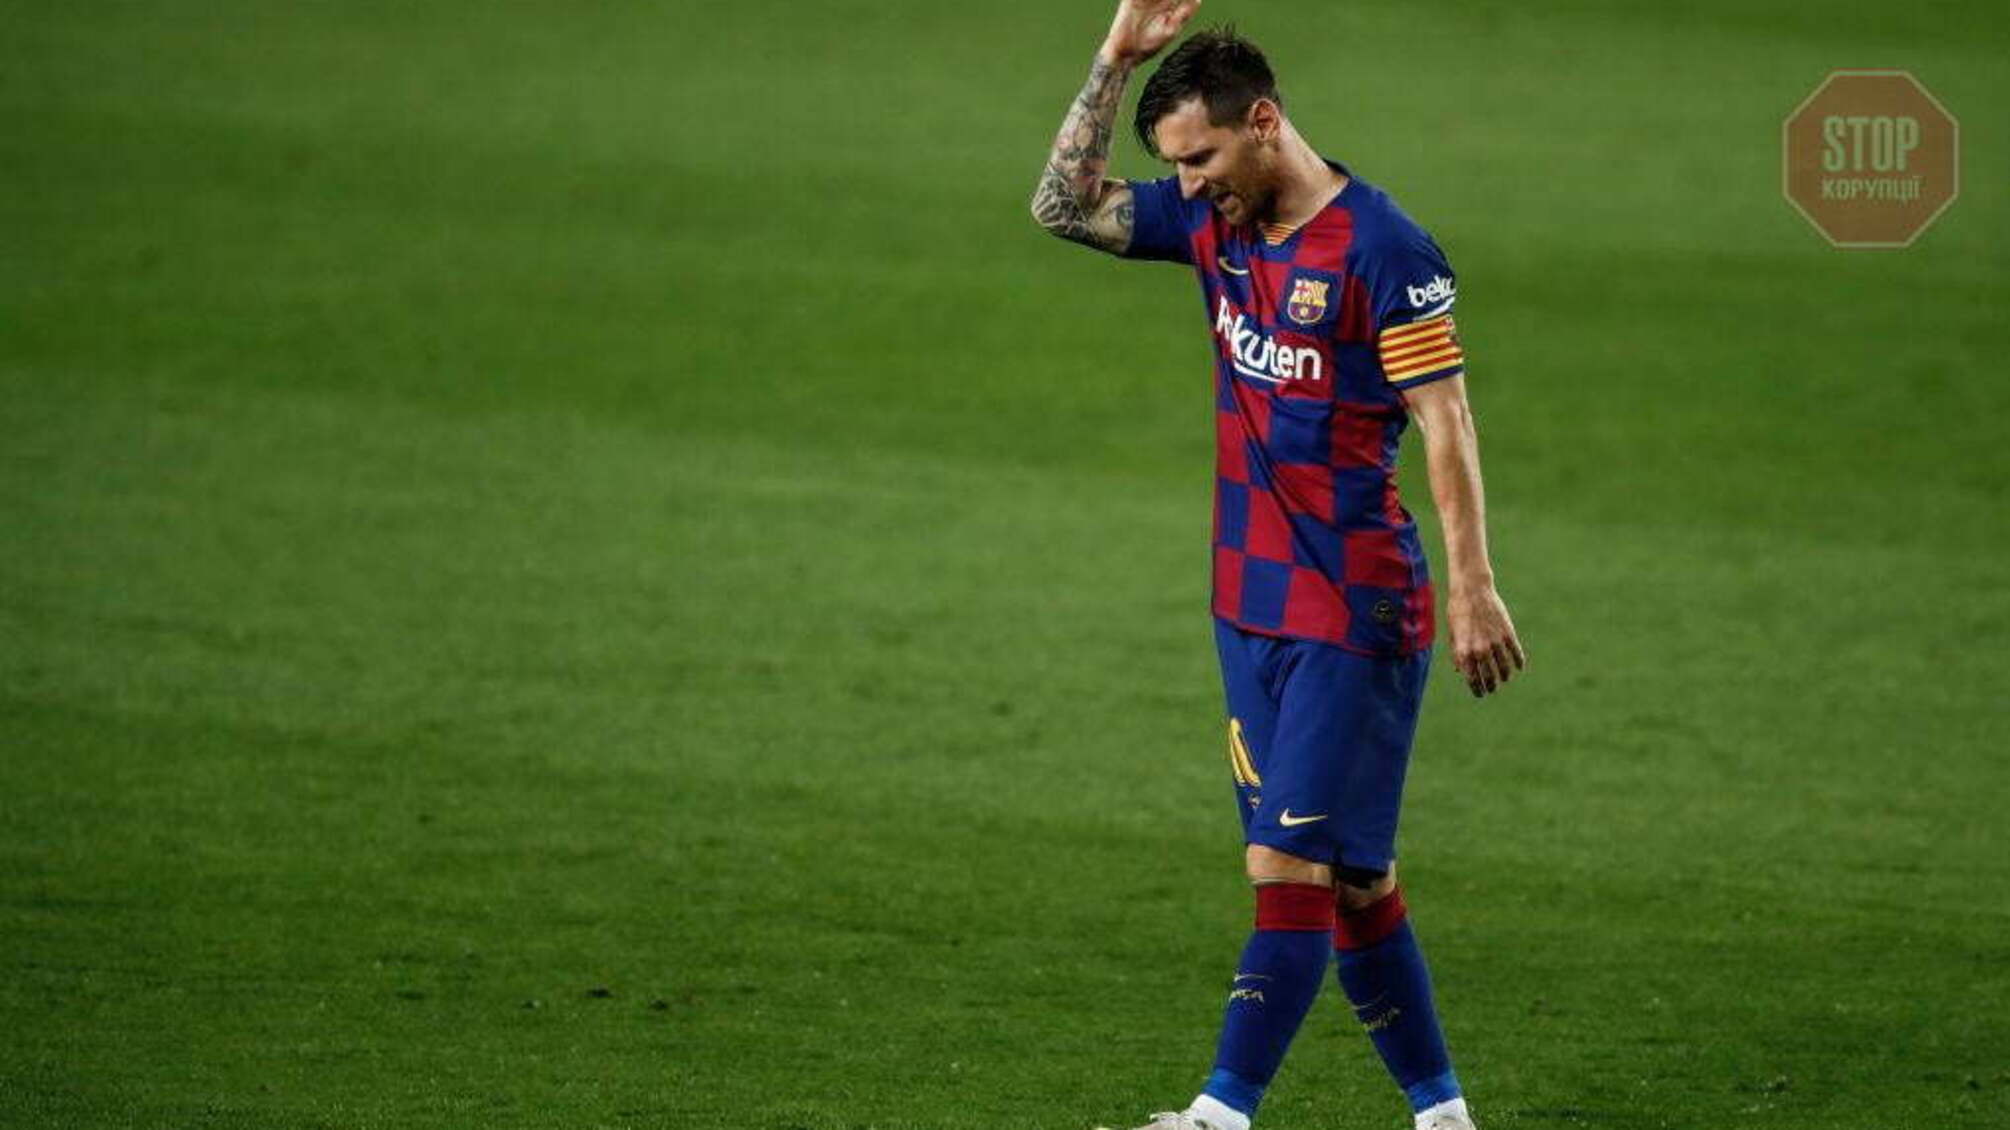 После 21 года игры Месси уходит из клуба 'Барселона'